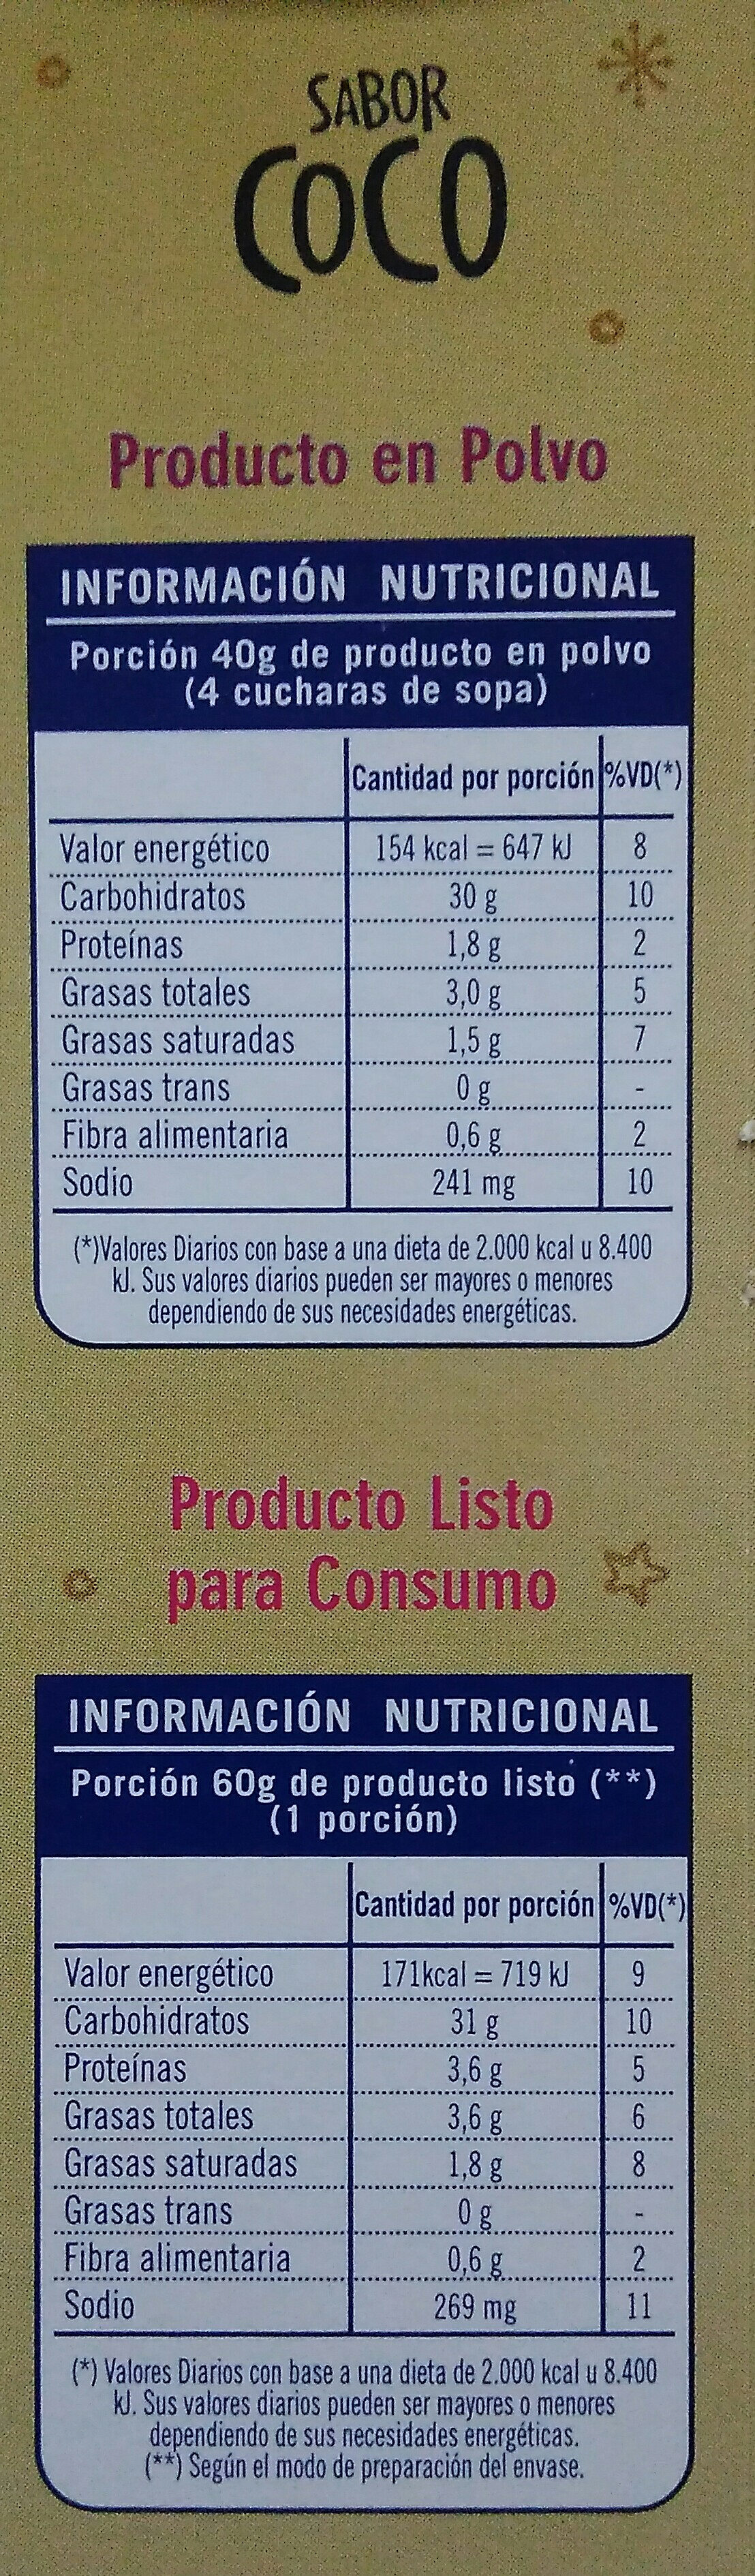 Bizcochuelo Exquisita coco - Nutrition facts - es